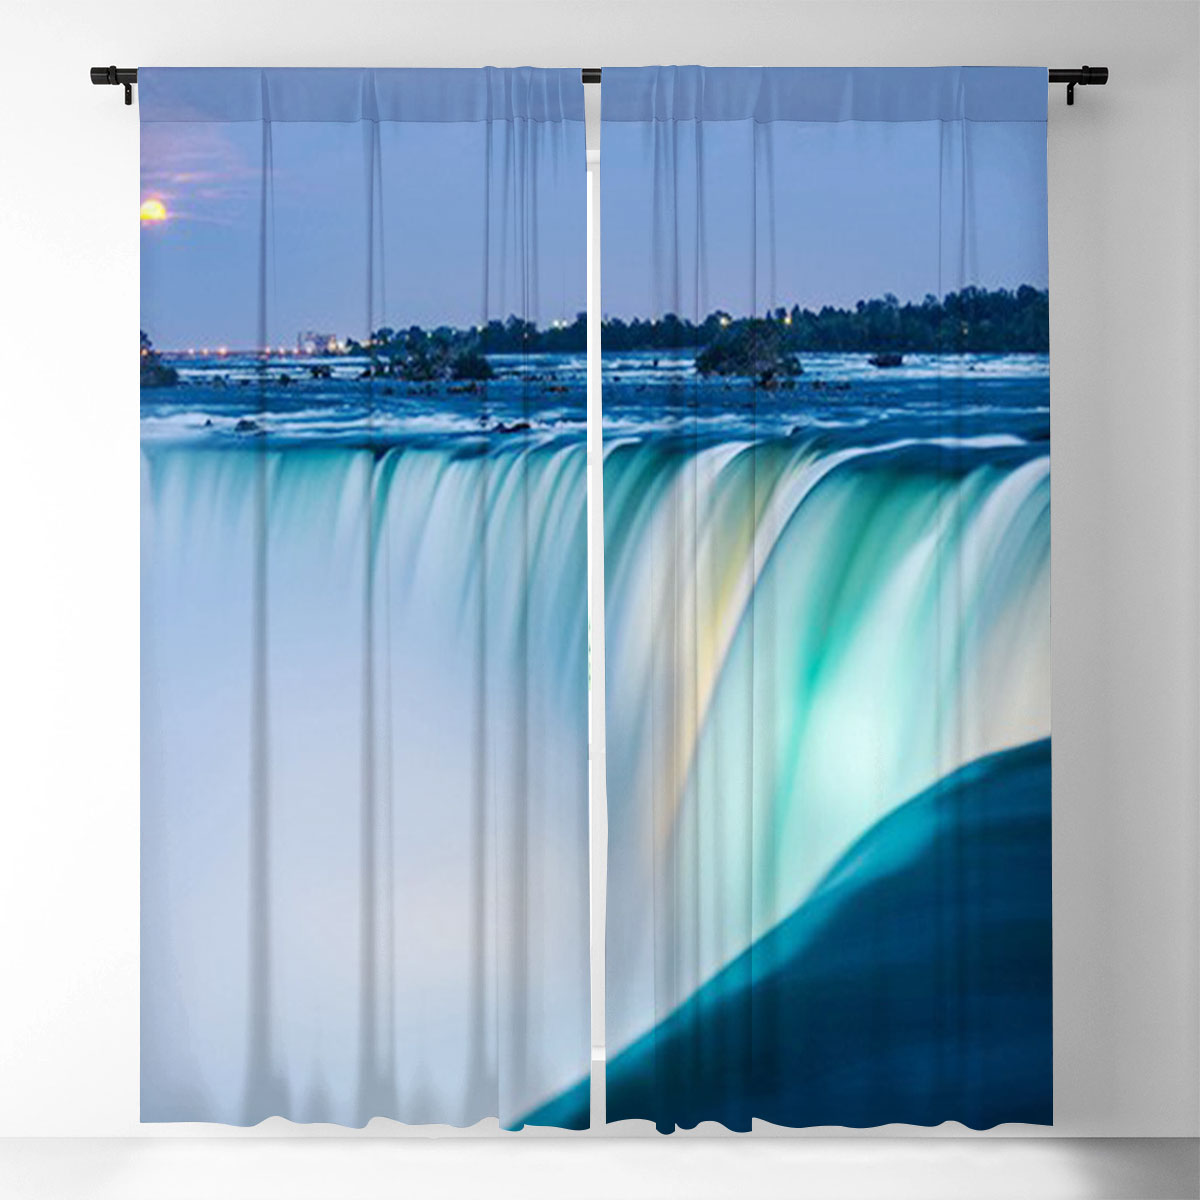 Dusk at Niagara Falls Window Curtain_1_2.1